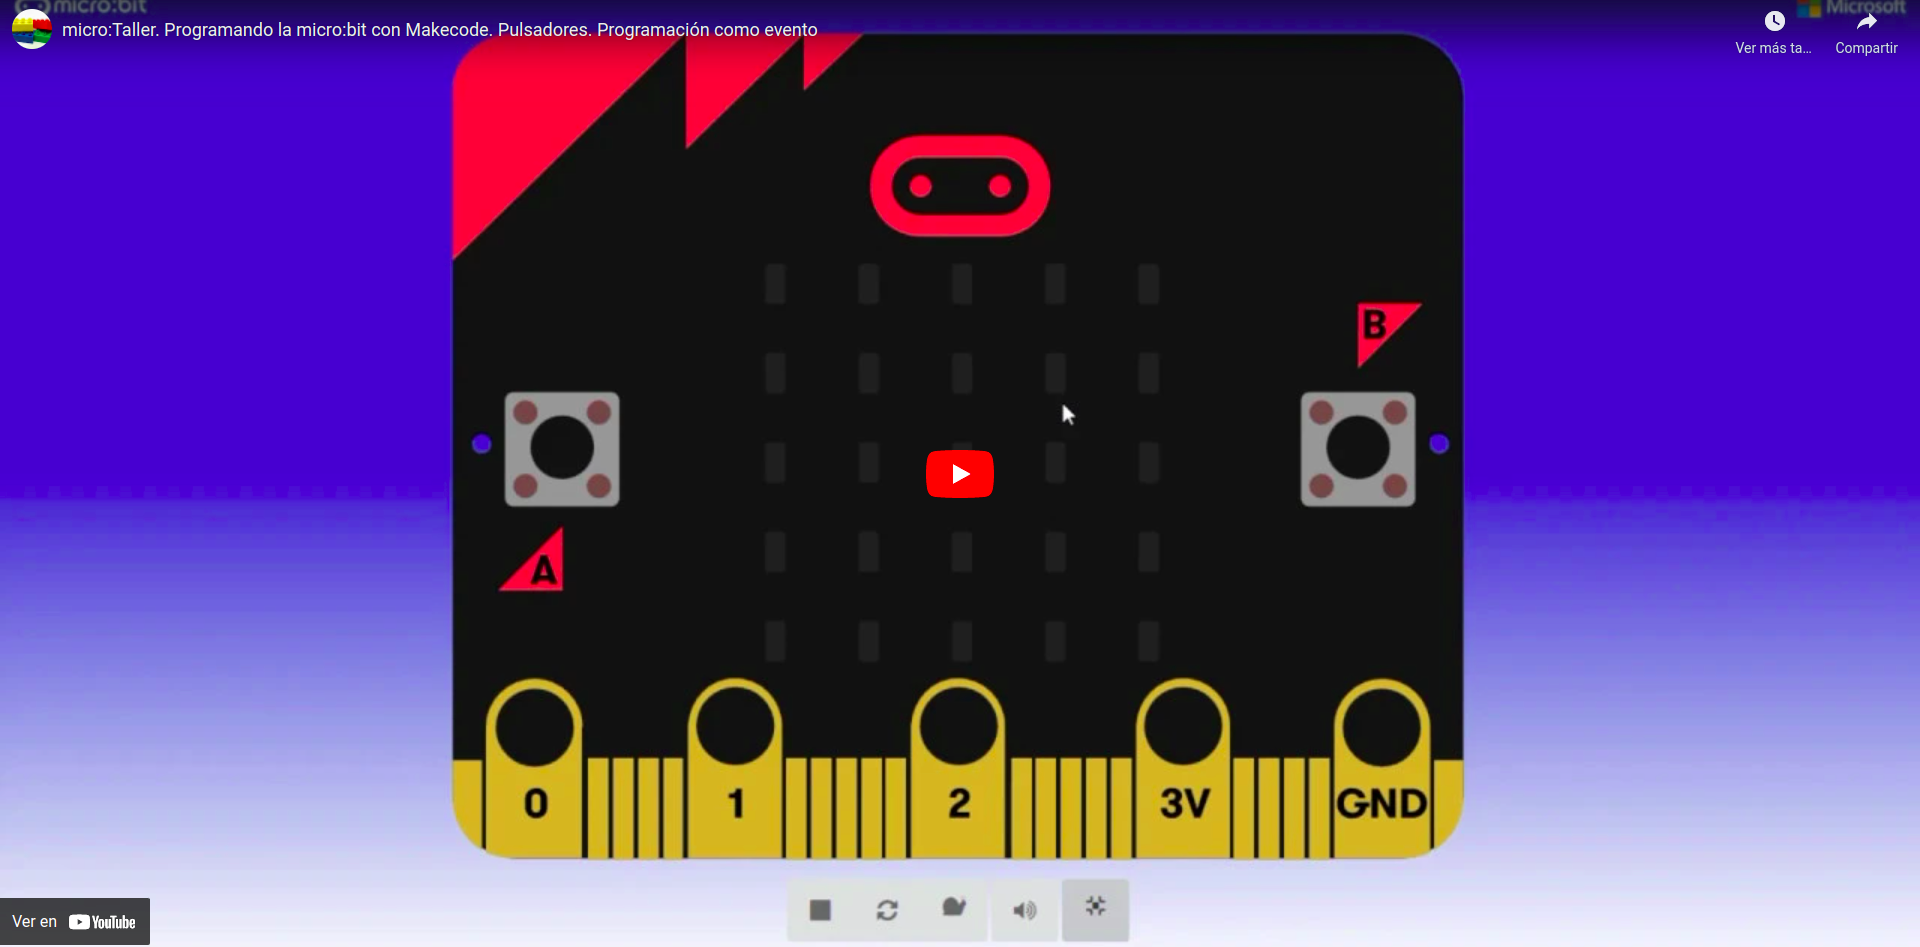 Vídeo que describe cómo programar los pulsadores de la micro:bit como evento en MakeCode